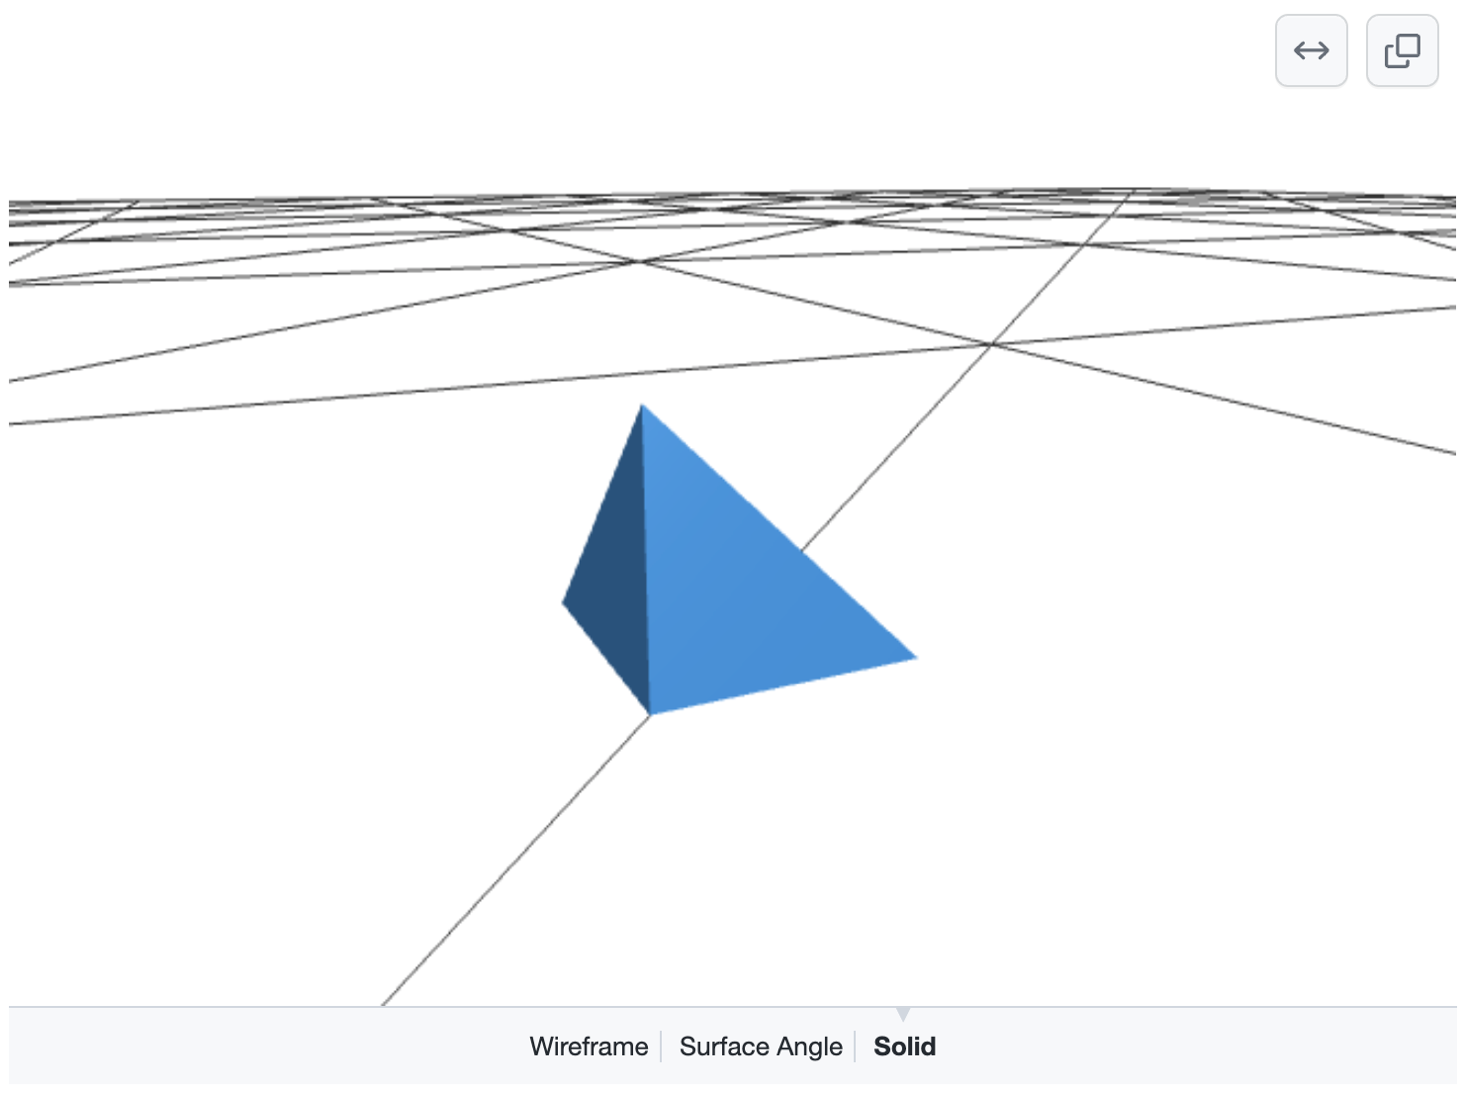 Снимок экрана: отрисованная трехмерная модель, показывающая синюю пирамиду на вершине сетки черных линий на белой земле. Параметры выбора "Проводной кадр", "Угол поверхности" или "Твердый" отображаются внизу.